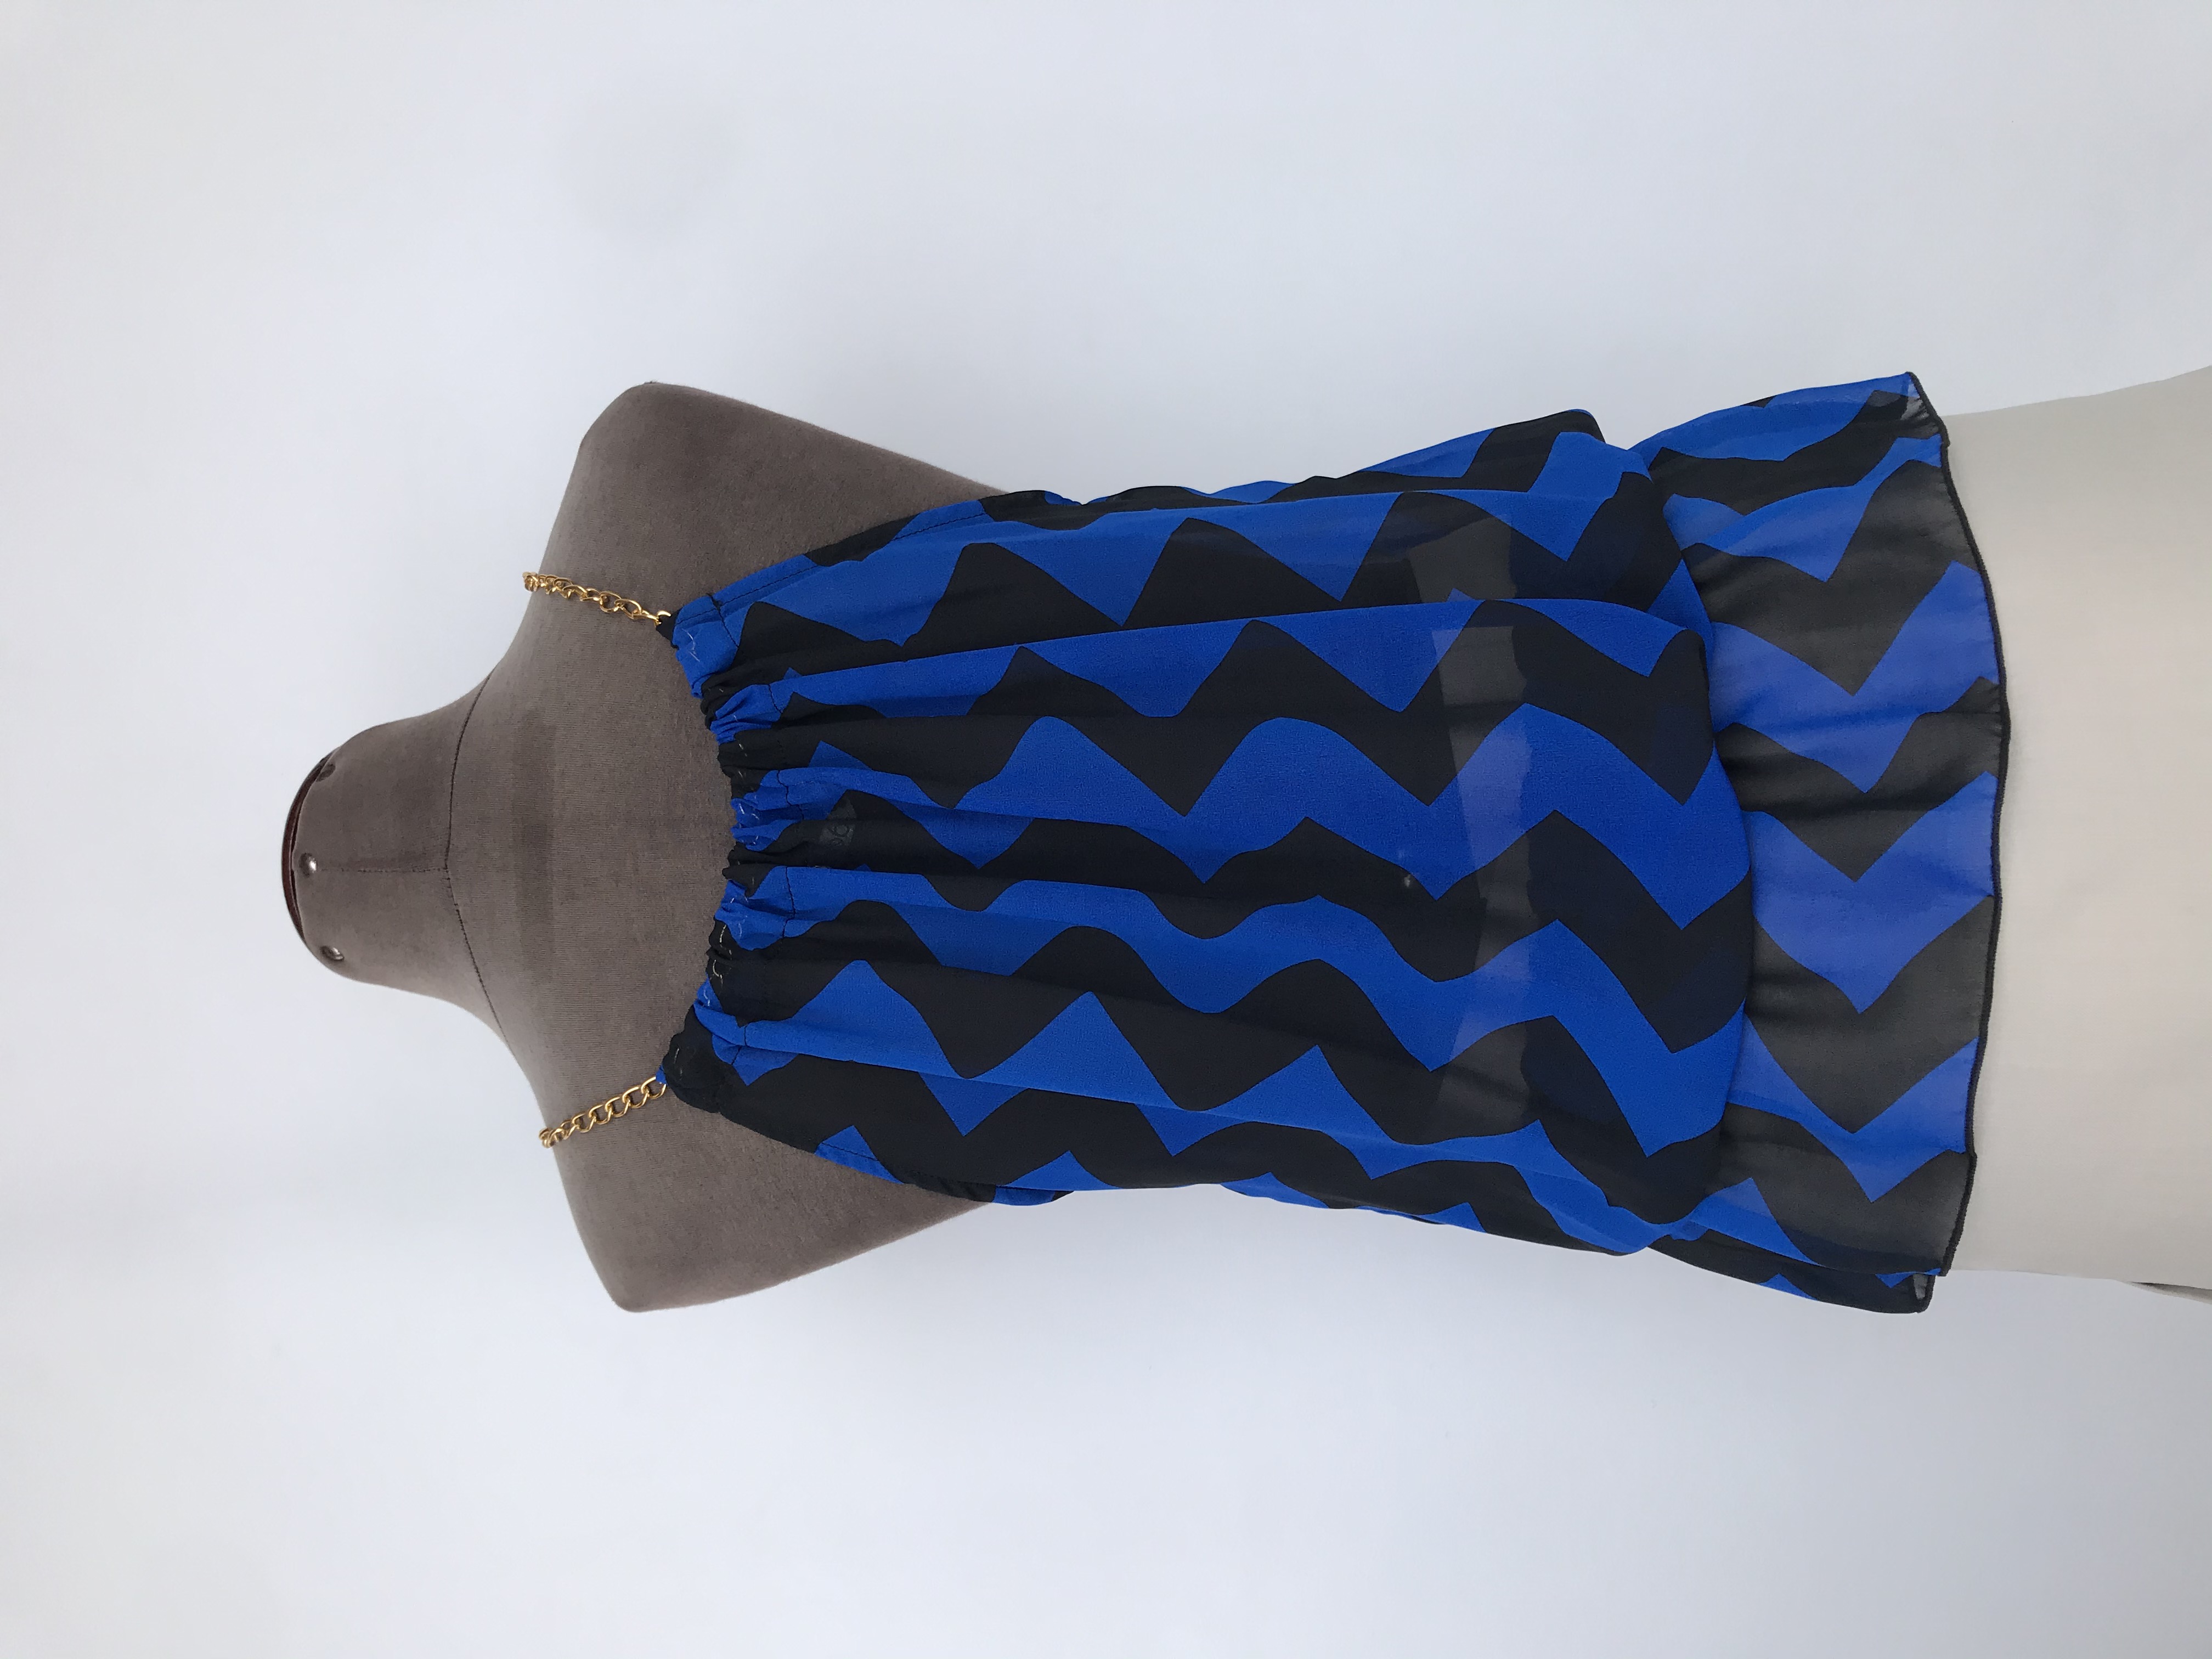 Blusa de gasa con estampado zigzag azul y negro, cuello recogido con cadena dorada, elástico en la basta. Largo desde cuello 52cm